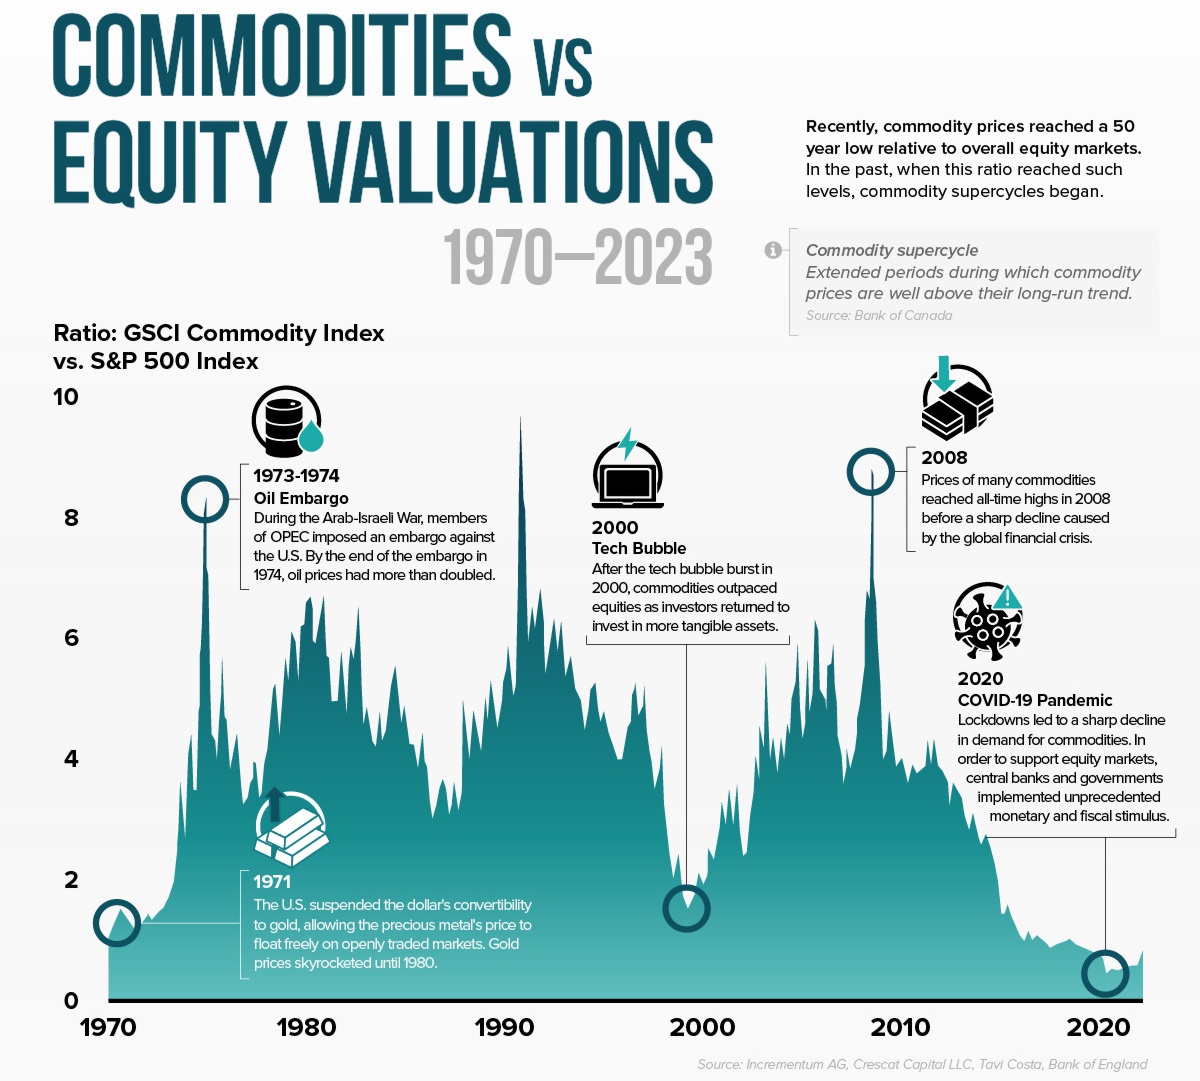 Ціни на сировинні товари досягли 50-річного мінімуму щодо ринків акцій